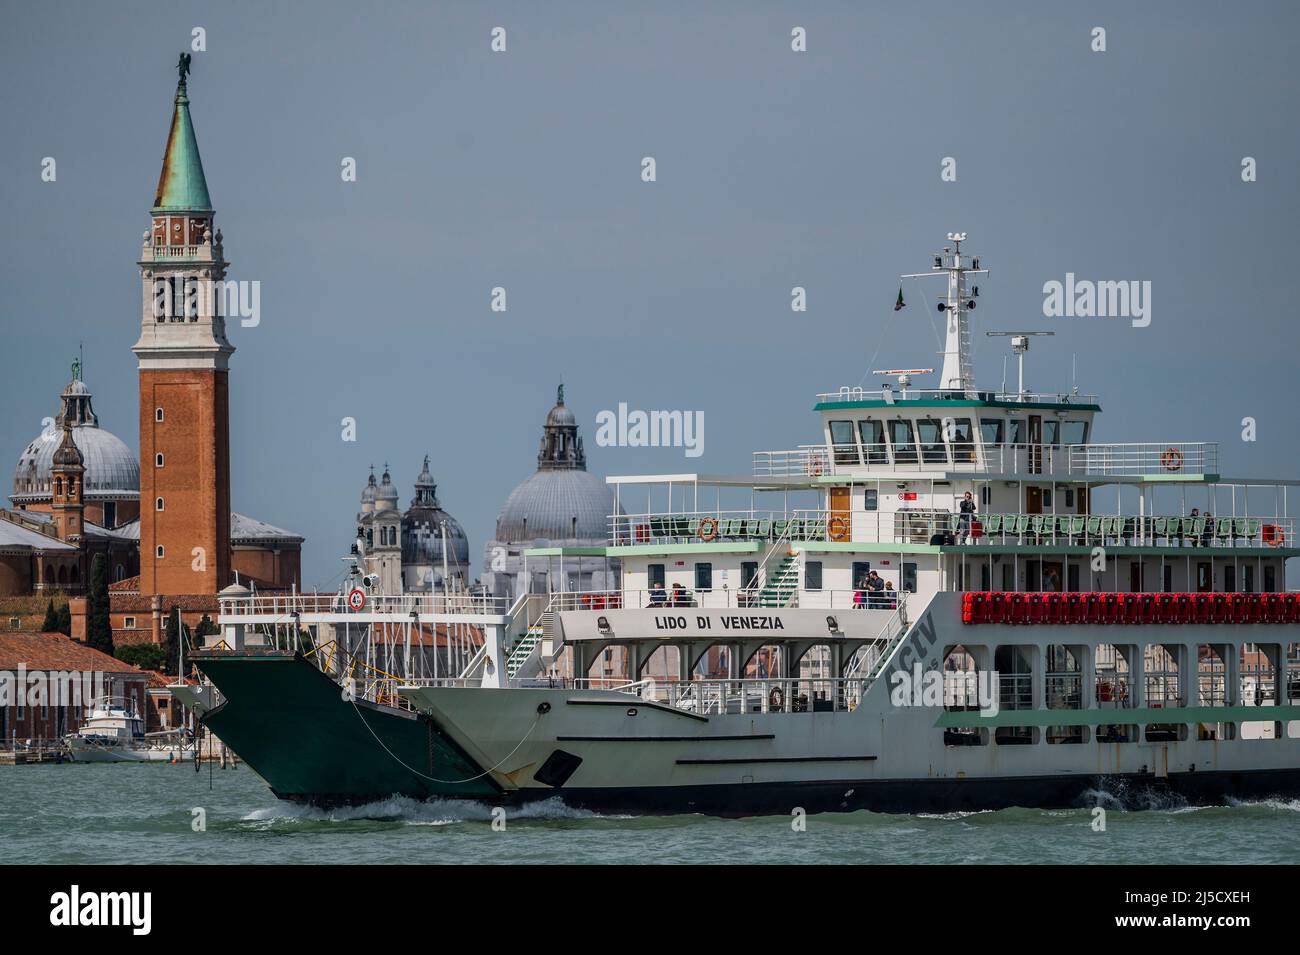 Un véhicule ferry sur la Canale di San Marco en face de l'église de San Giorgio Maggiore sur la Canale di San Marco - les canaux sont les principales artères portant toutes les formes de transport d'eau - Venise au début de la Biennale di Venezia en 2022. Banque D'Images